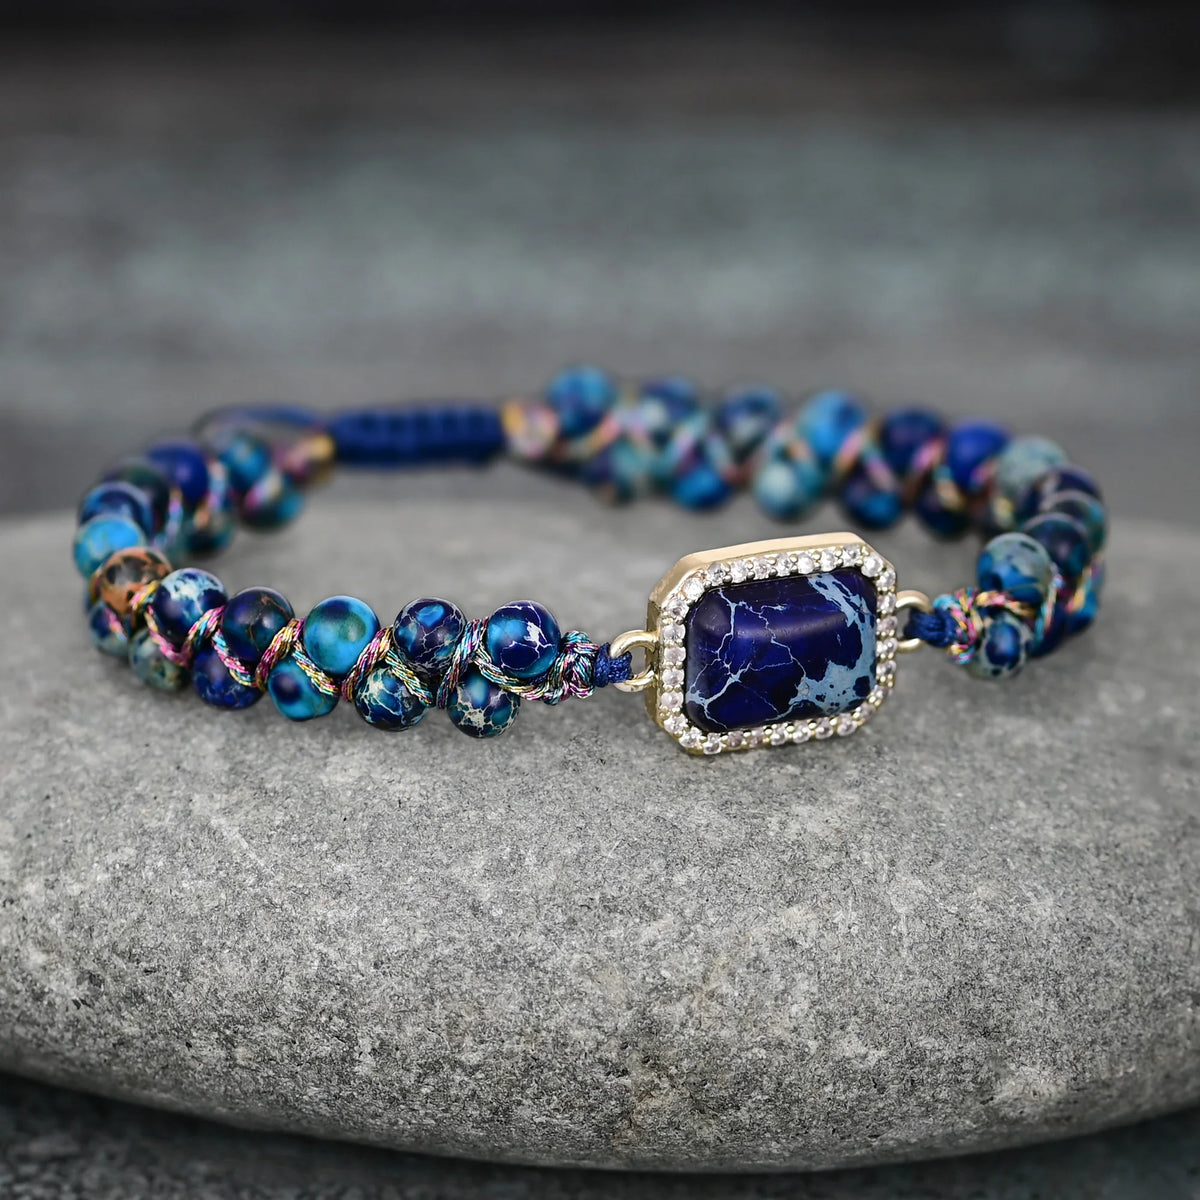 Blue Rectangular Stone Pendant Beaded Bracelet